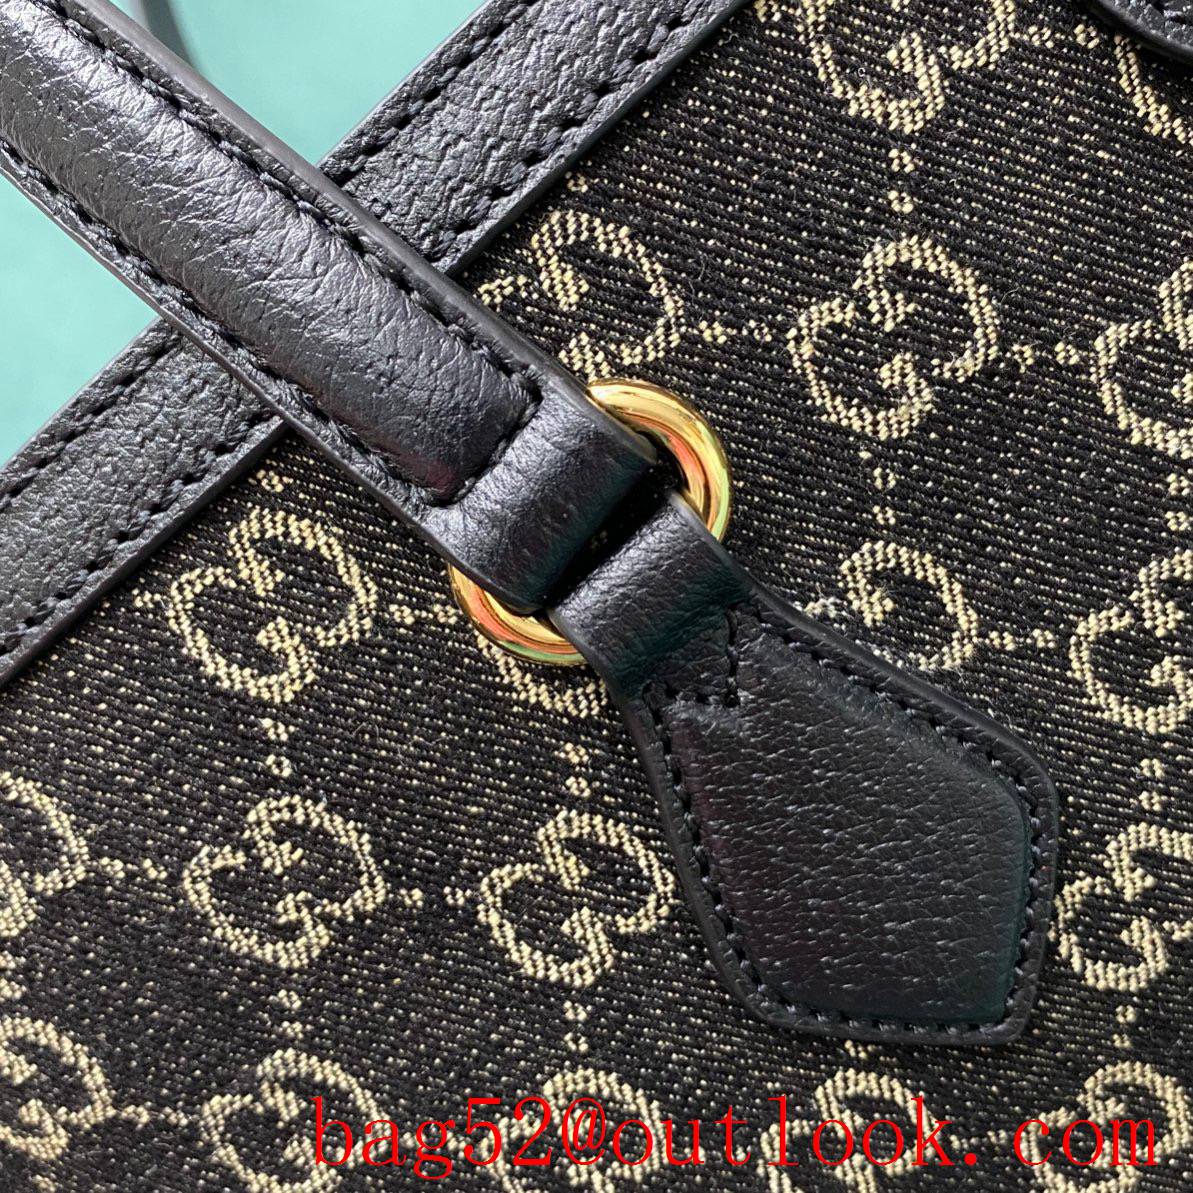 Gucci Square Buckle Bag GG Pattern black shoulder handbag